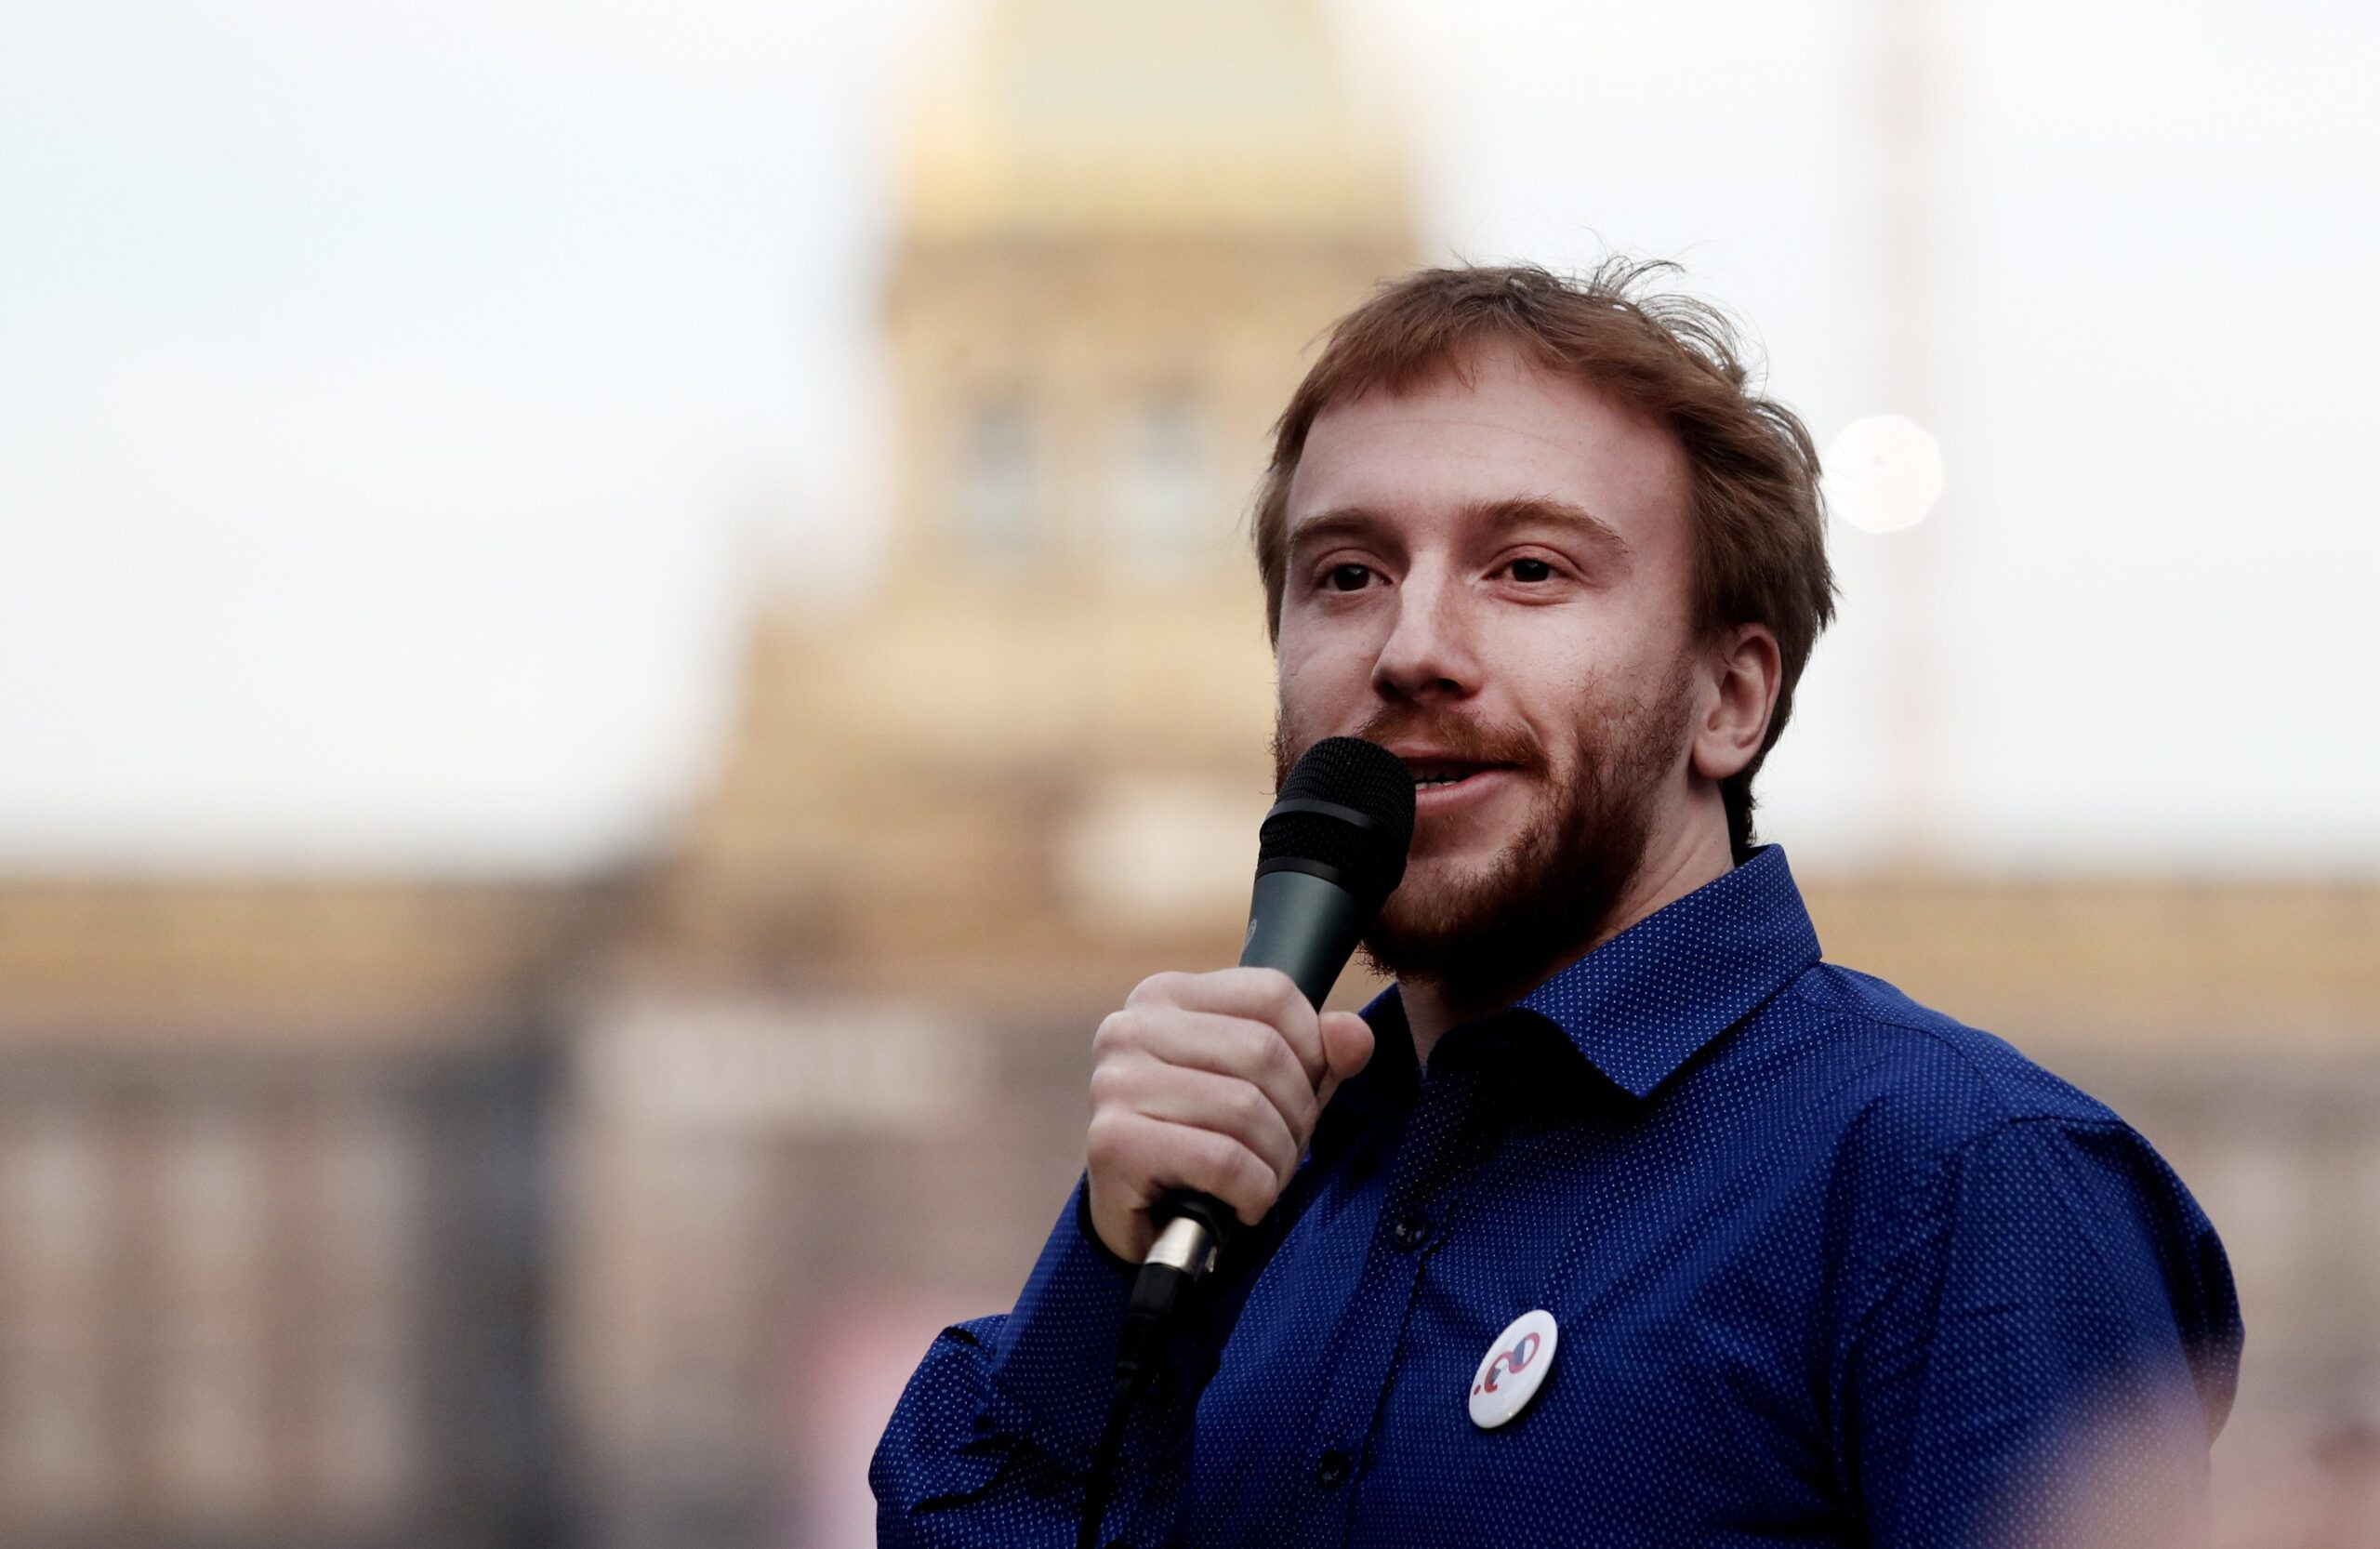 Mikuláš Minář při demonstraci na Václavském náměstí. Praha, 9. dubna 2018.